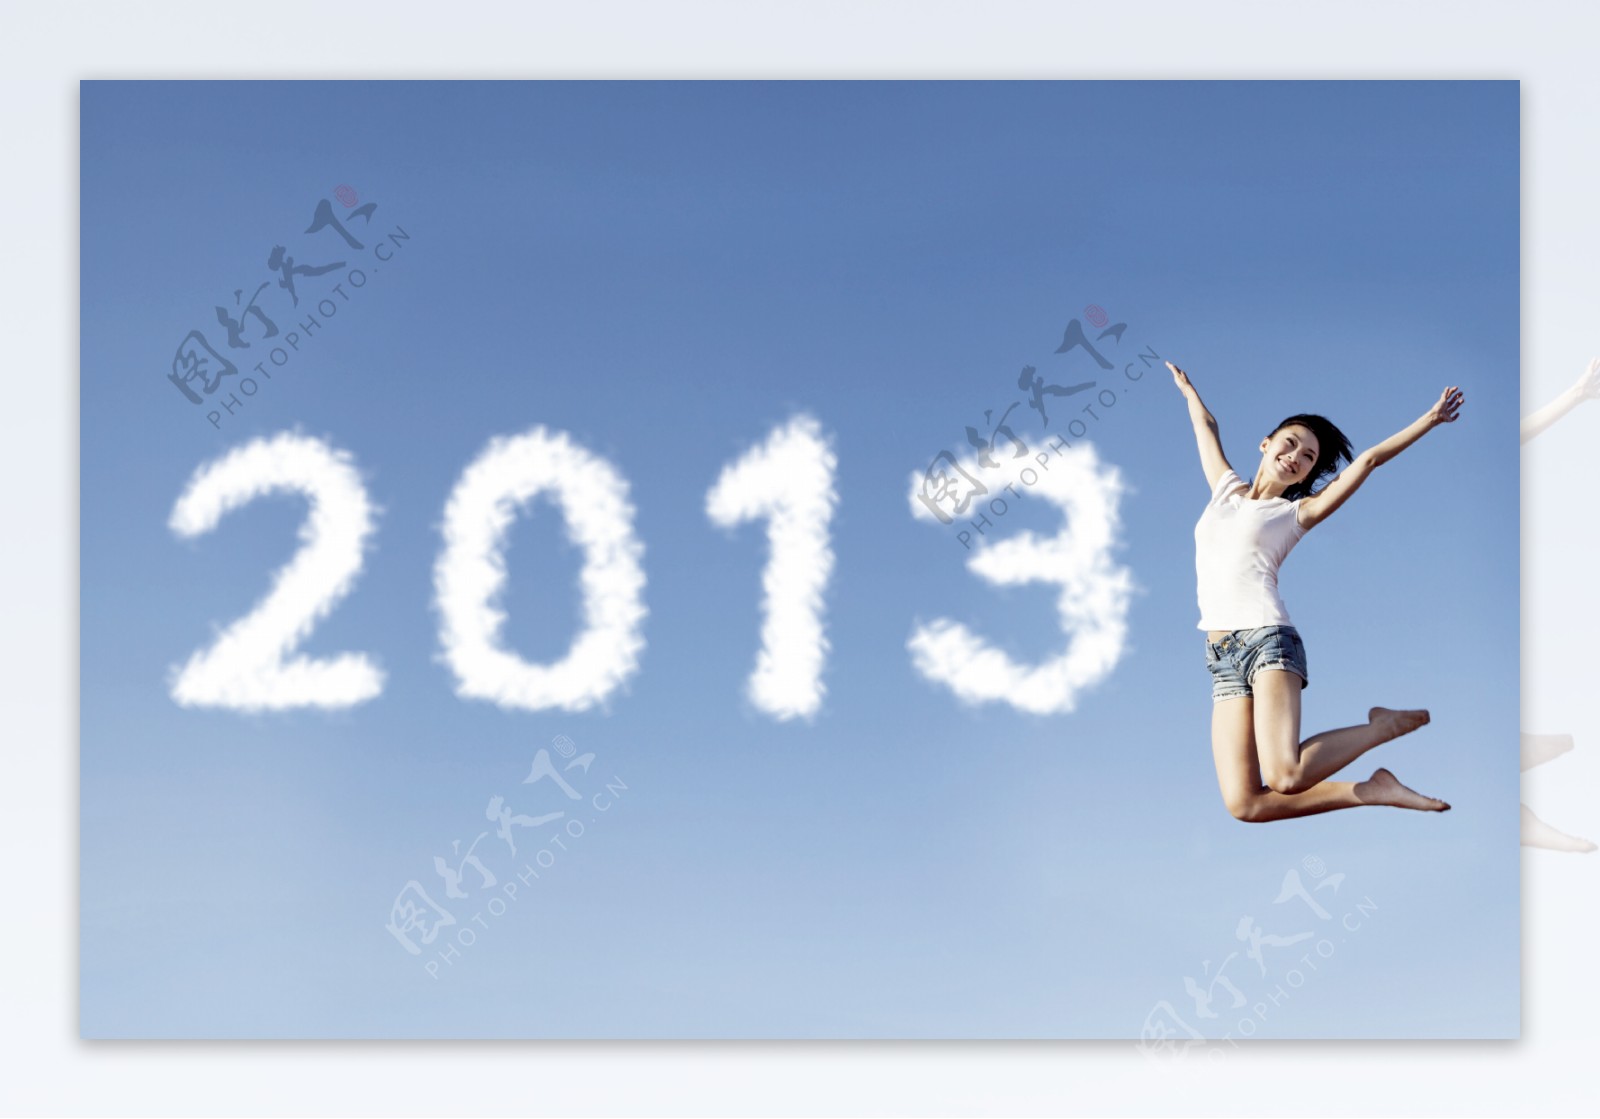 2013云朵艺术字与跳跃的女人图片